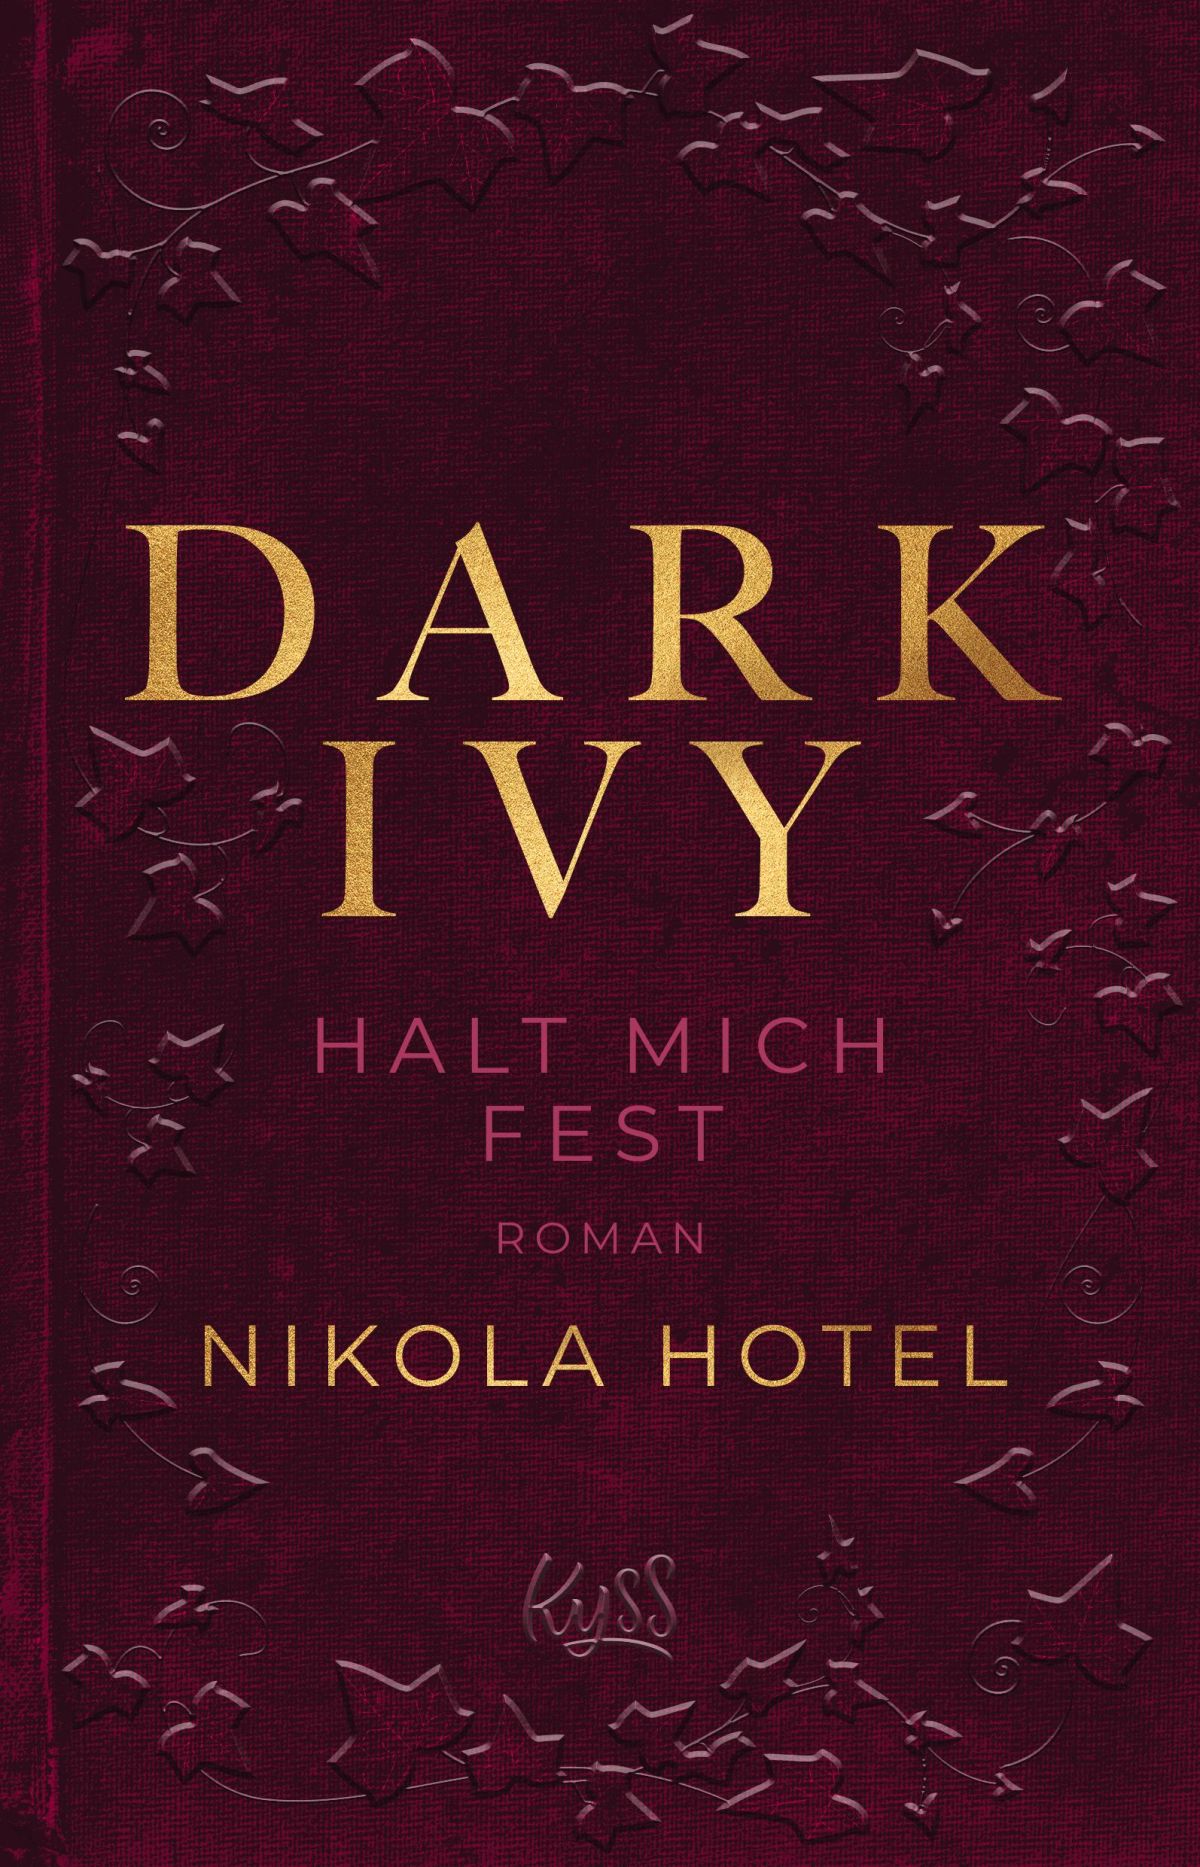 Nikola Hotel - Dark Ivy - Halt mich fest